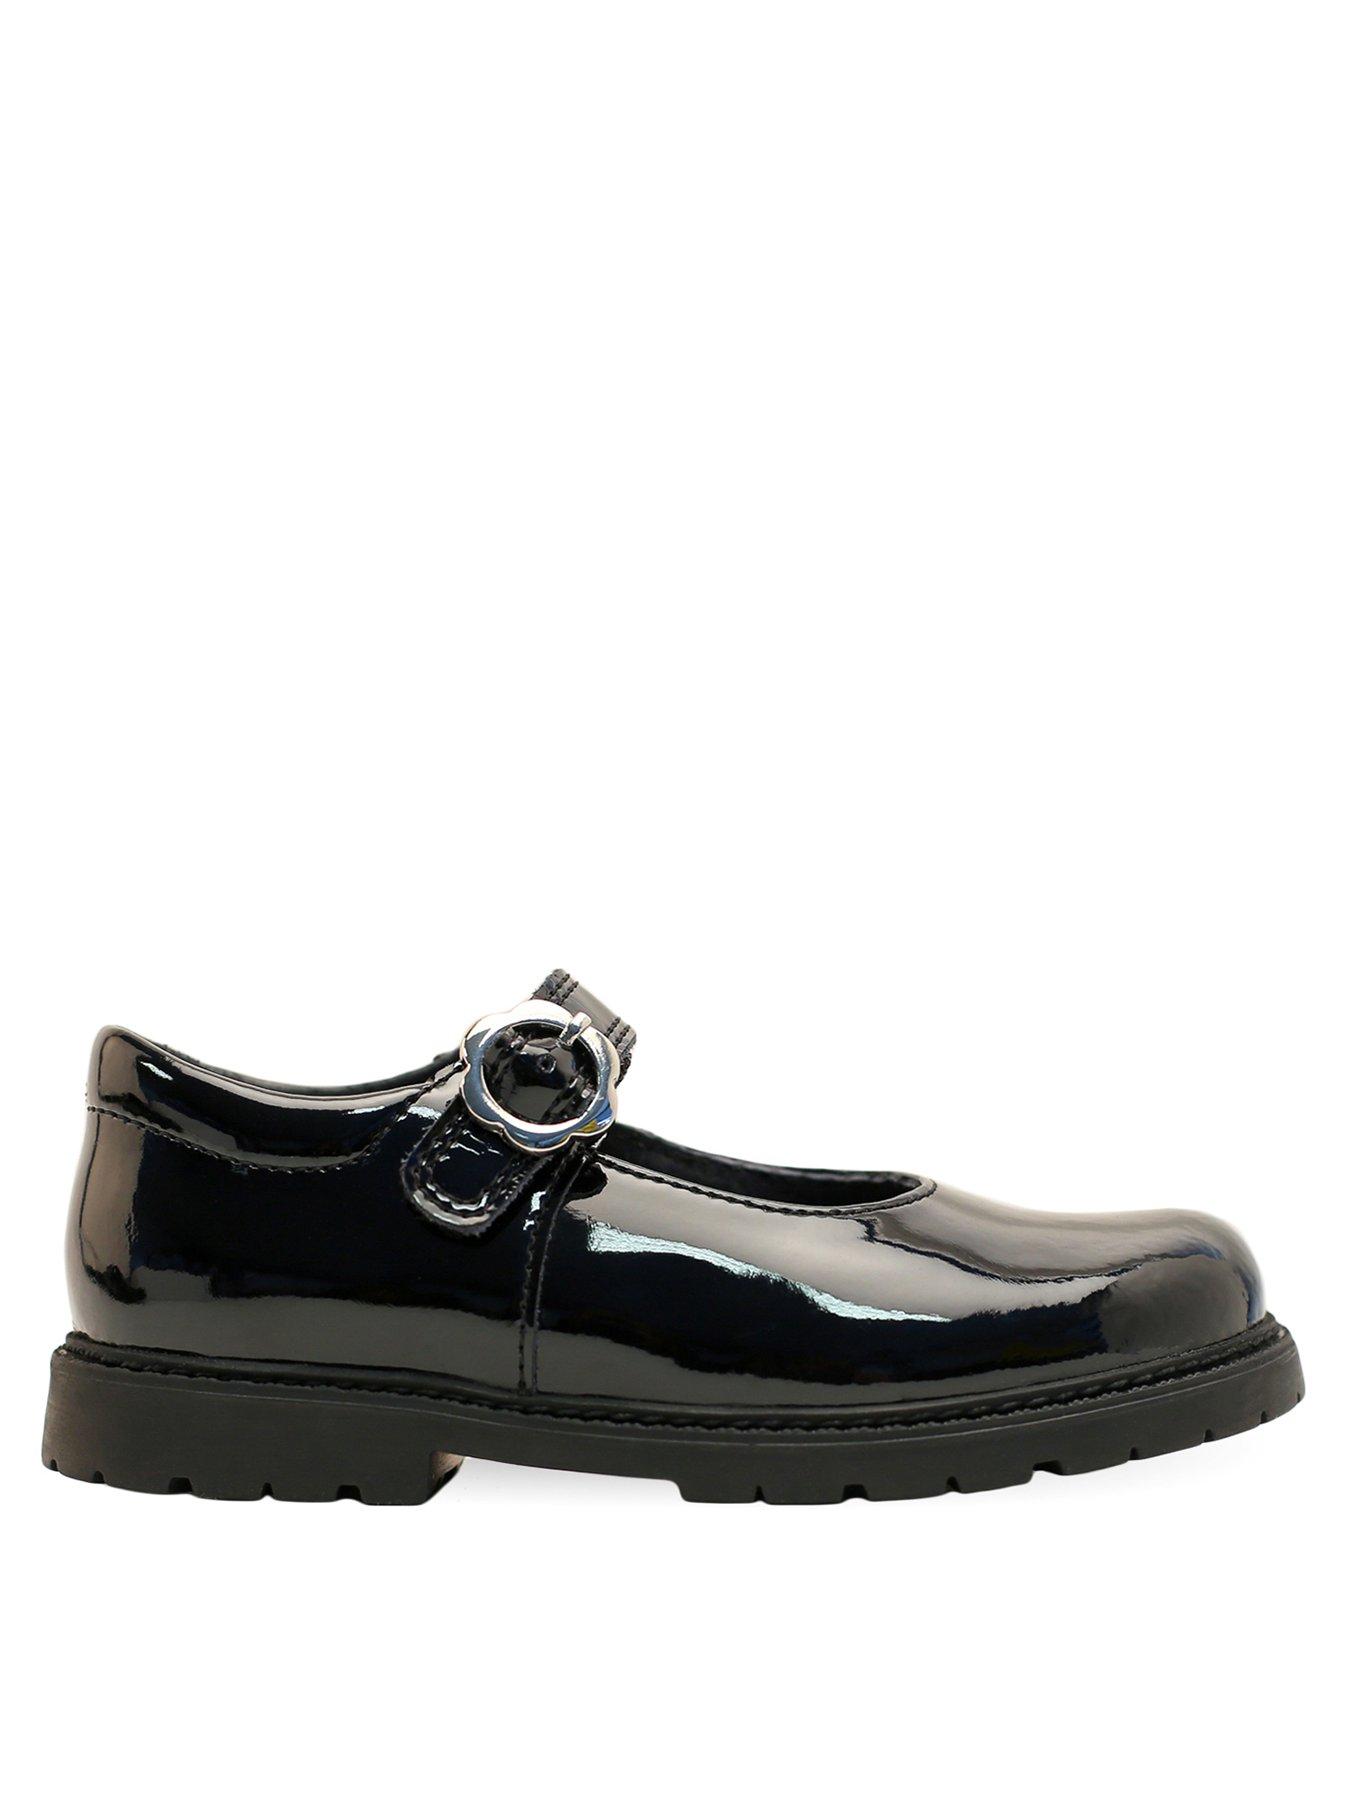 Shoes & boots Destiny Shoe - Black